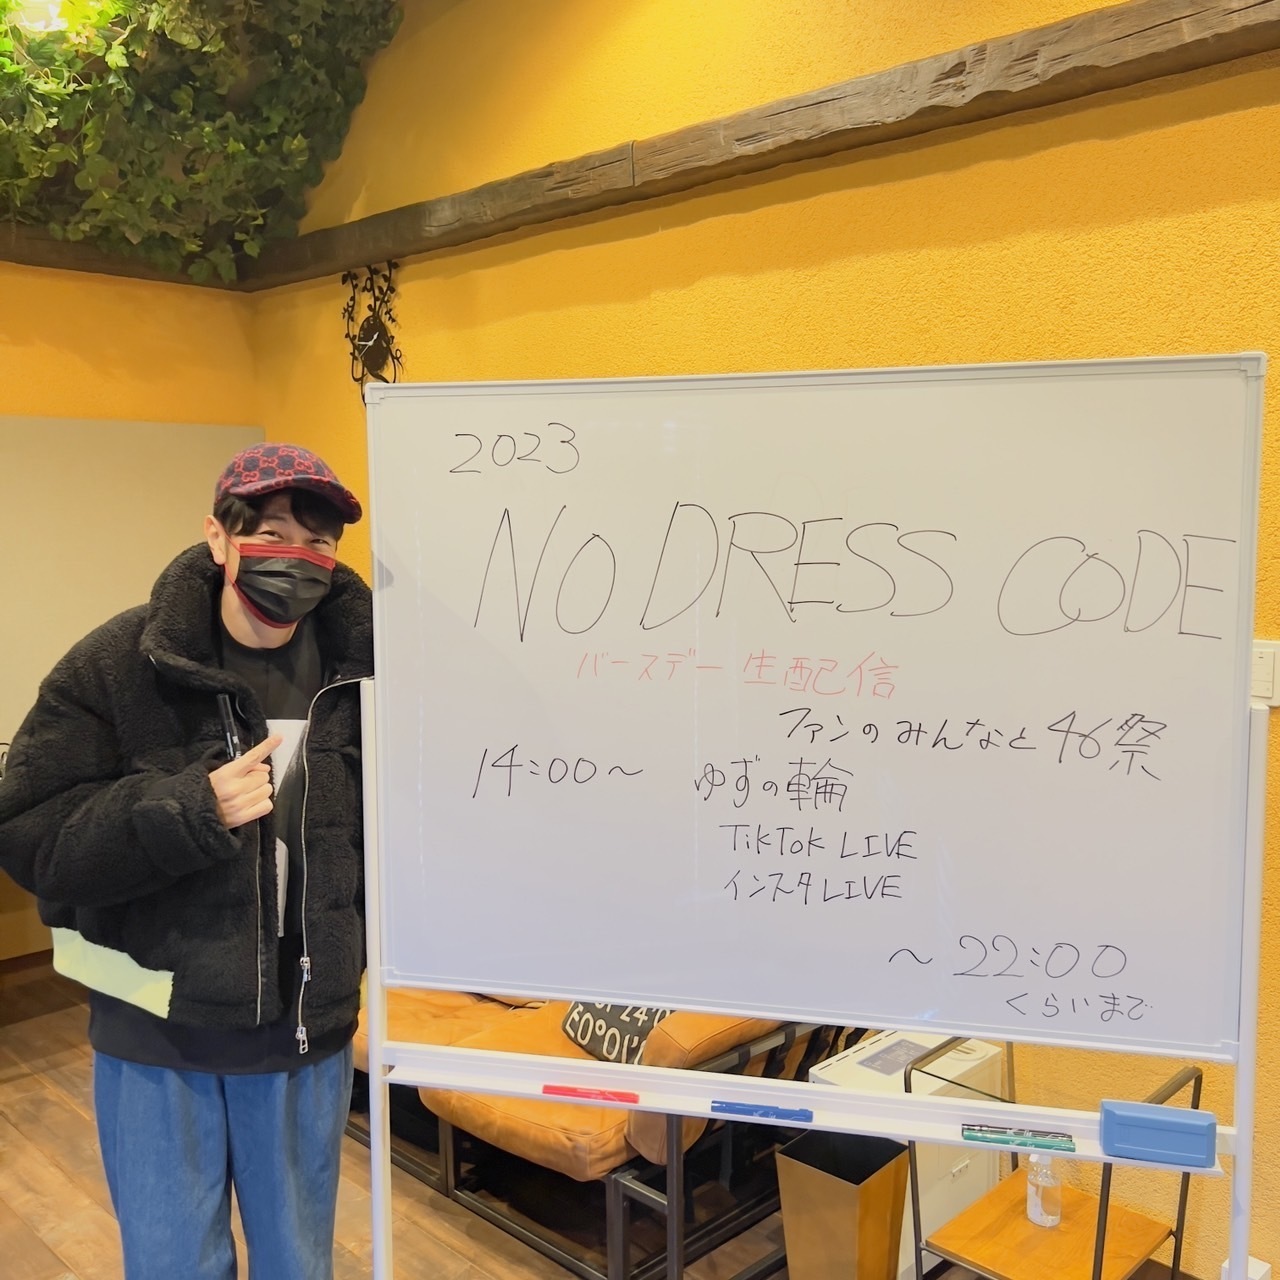 北川悠仁バースデー生配信「NO DRESS CODE」、1月14日(土)に開催決定